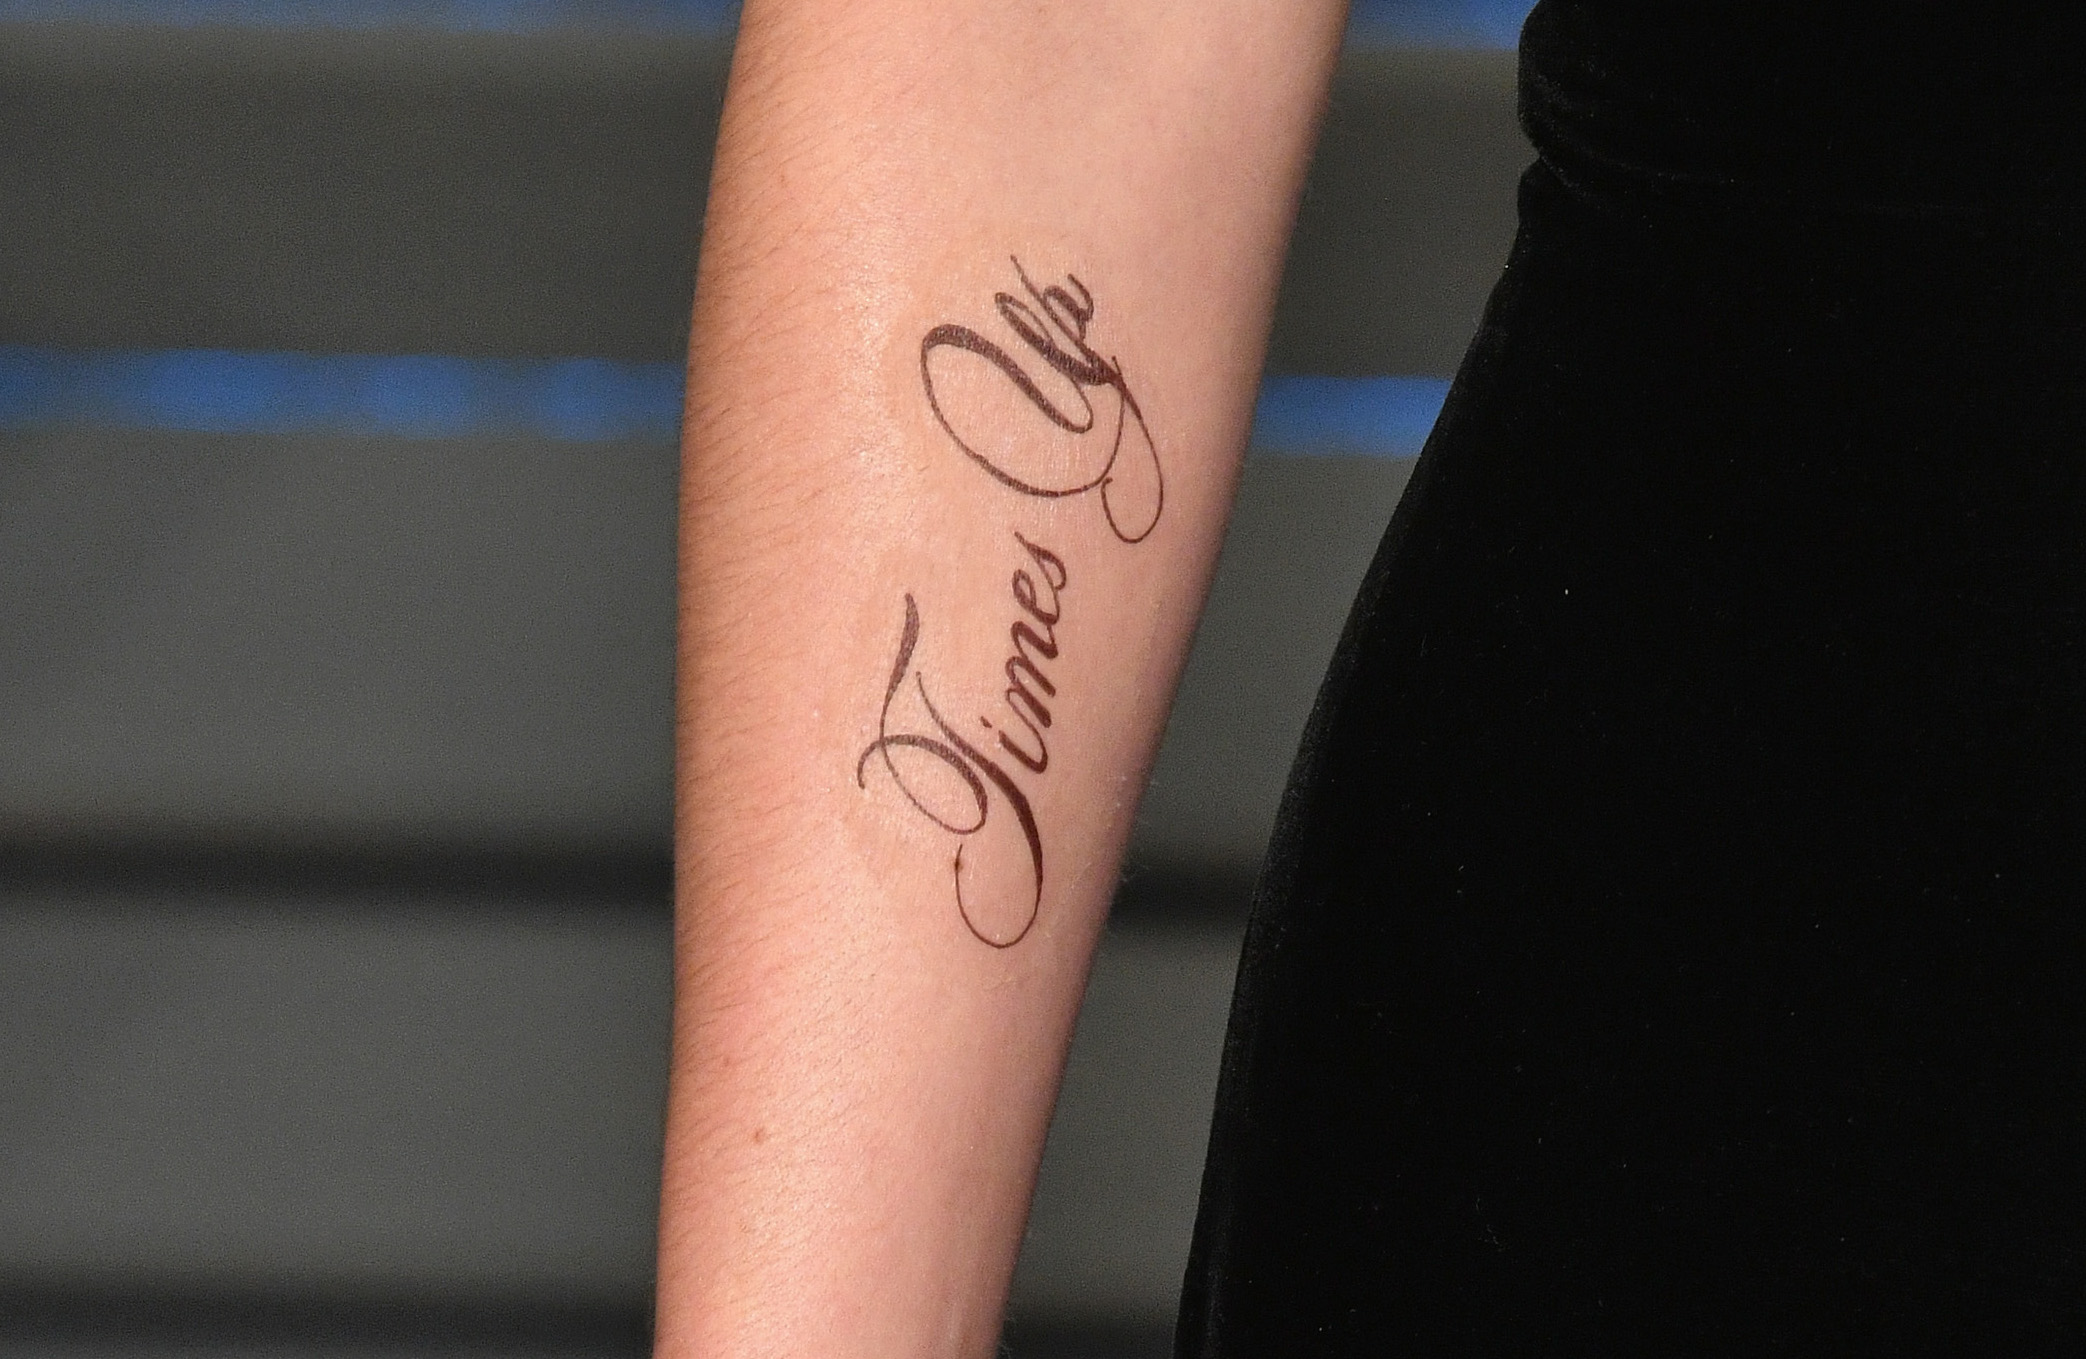 Manchmal sind Details eben doch entscheidend - Emma Watsons sprachlich verunglücktes Tattoo